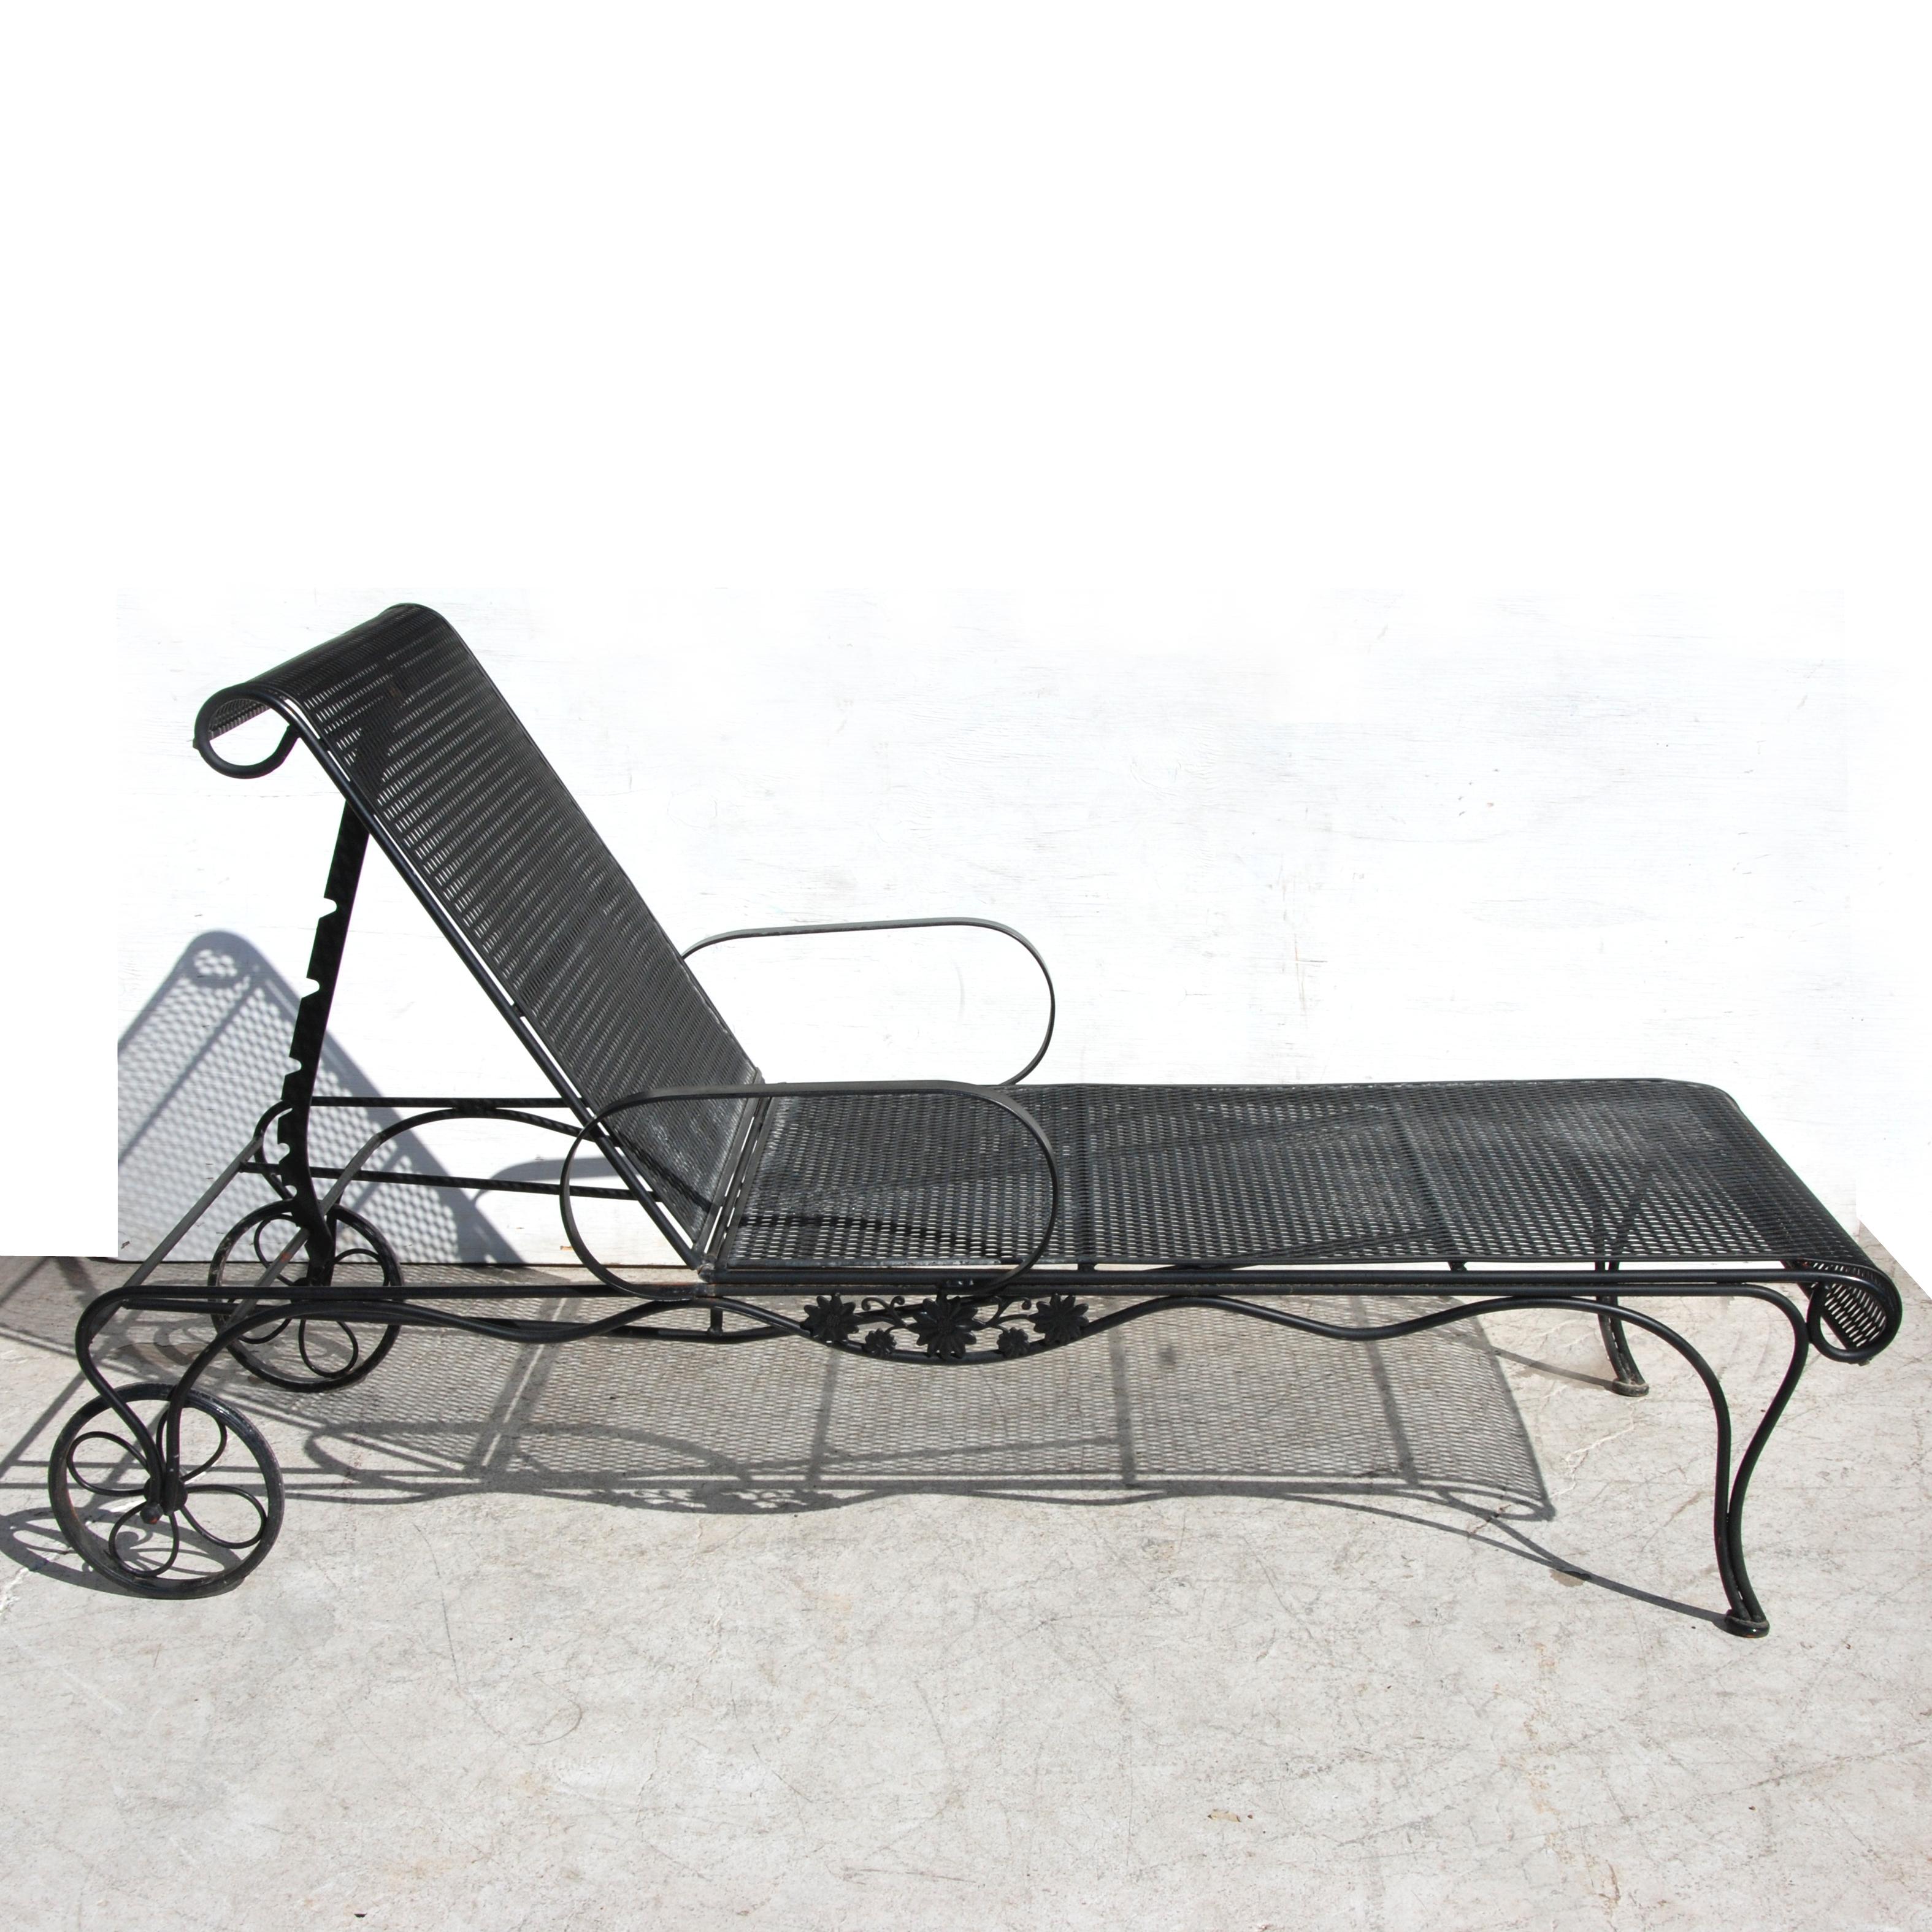 Woodard Stil Schmiedeeisen Terrasse Chaise Lounge

Vintage Woodard Stil Schmiedeeisen verstellbare Chaiselongue aus Europa.

Mit verstellbarer Rückenlehne und Rollen für die Mobilität.
 

 Abmessungen: 37.5